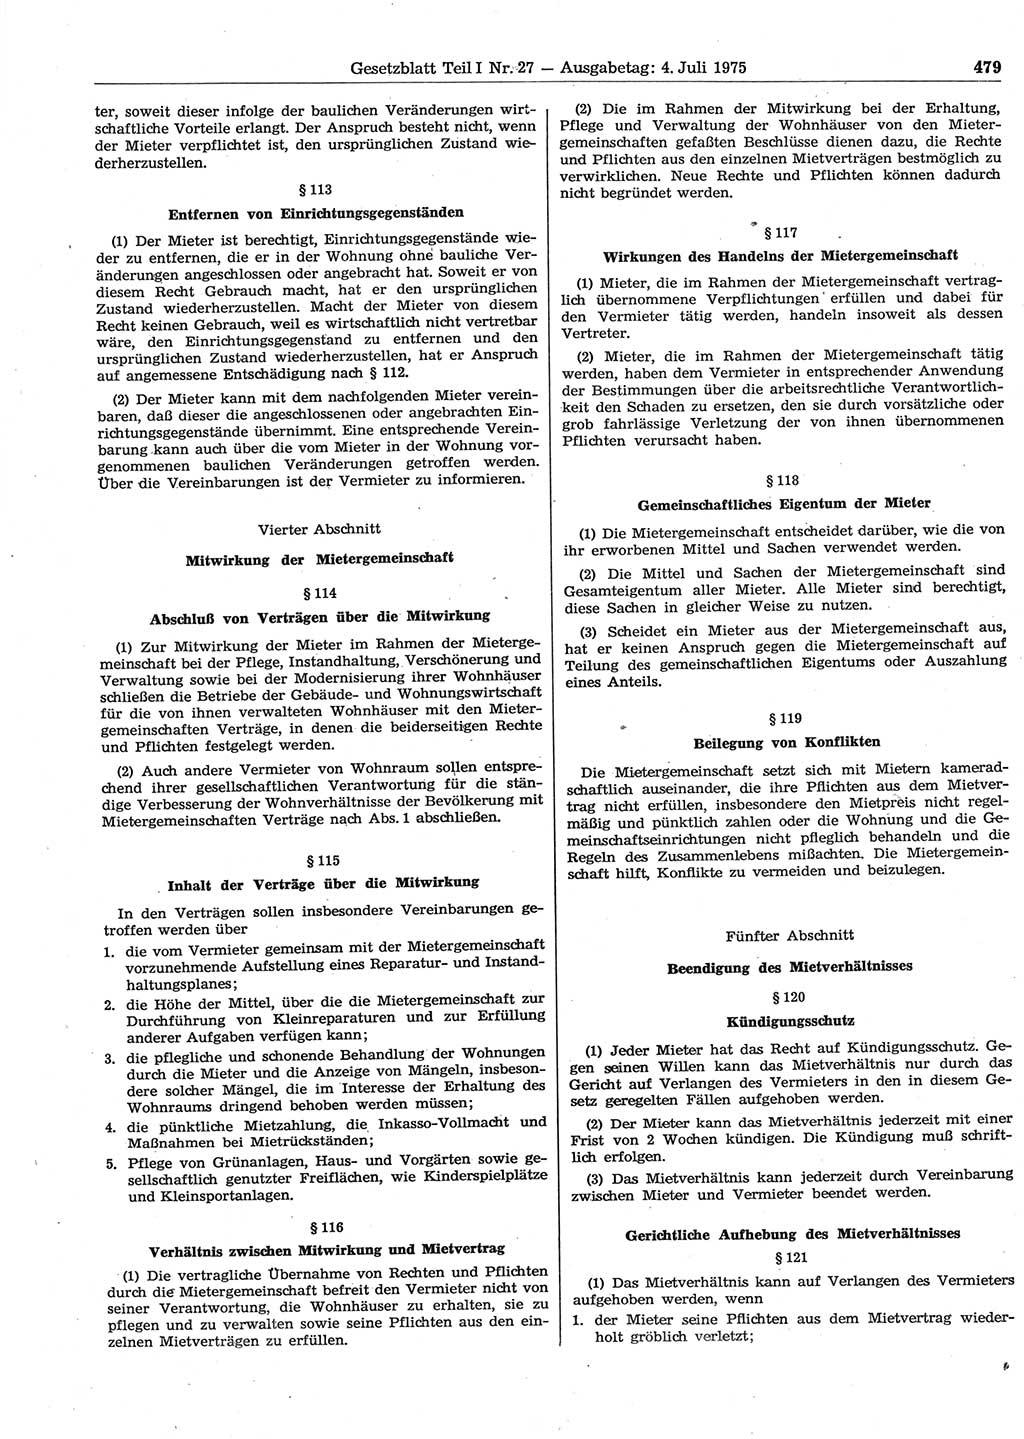 Gesetzblatt (GBl.) der Deutschen Demokratischen Republik (DDR) Teil Ⅰ 1975, Seite 479 (GBl. DDR Ⅰ 1975, S. 479)